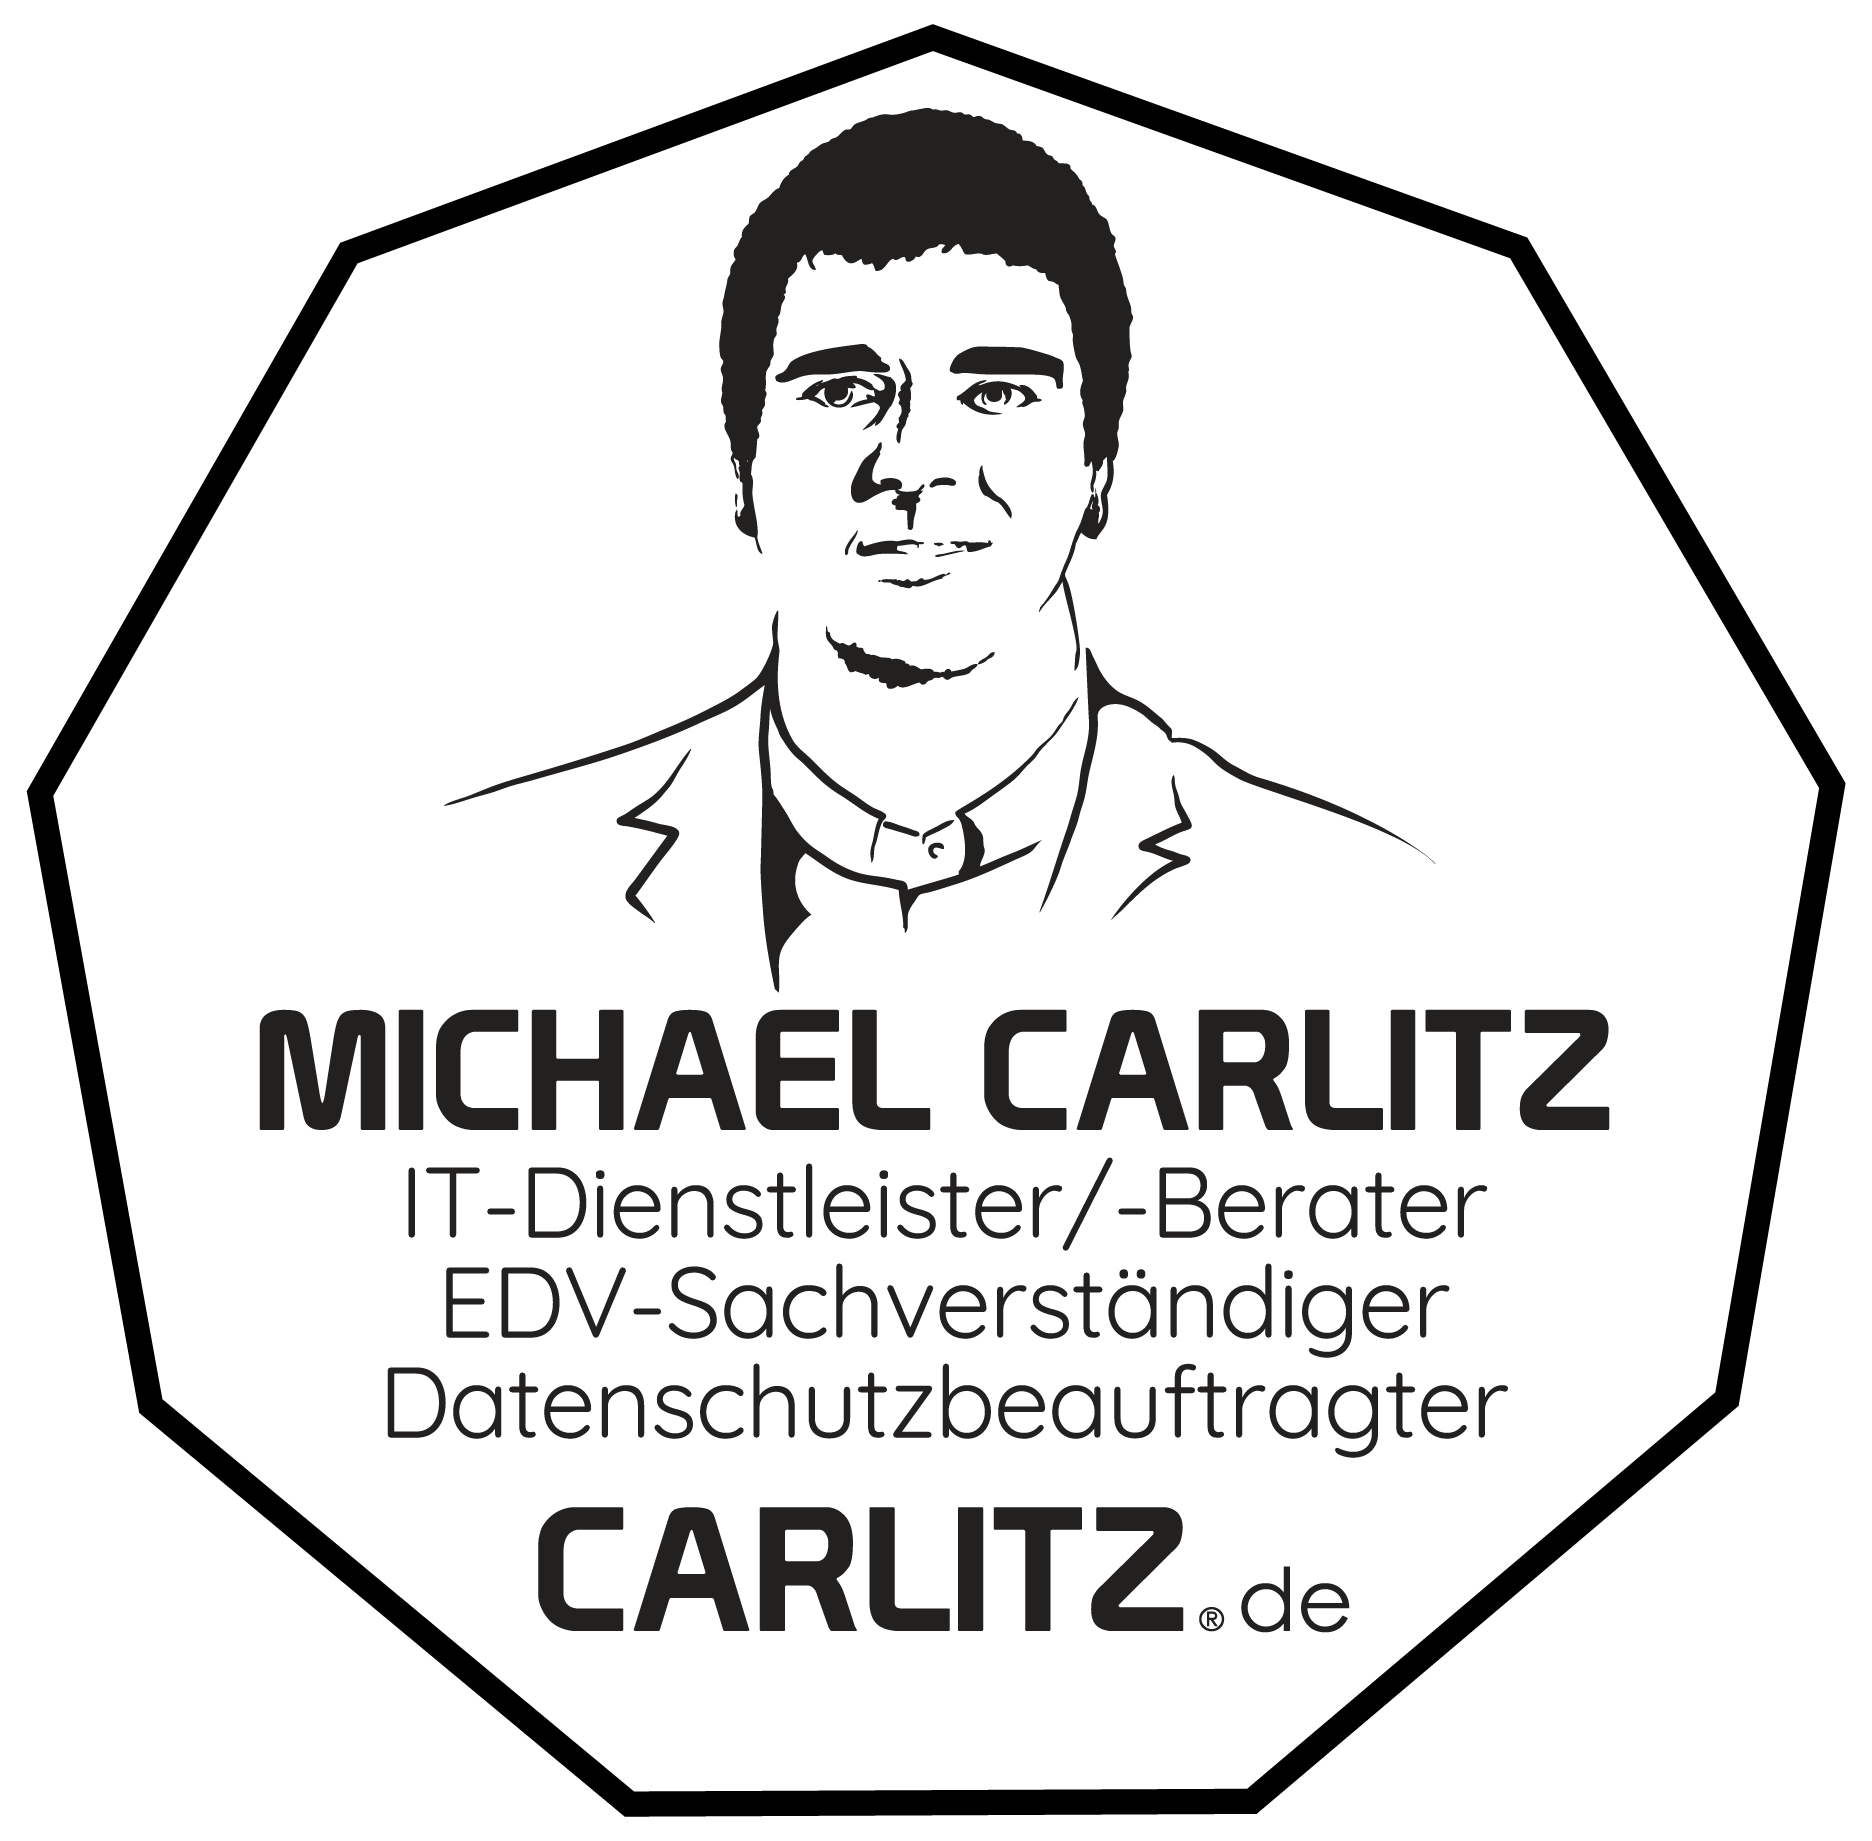 Michael Carlitz - IT-Berater, Datenschutzbeauftragter und EDV-Sachverständiger